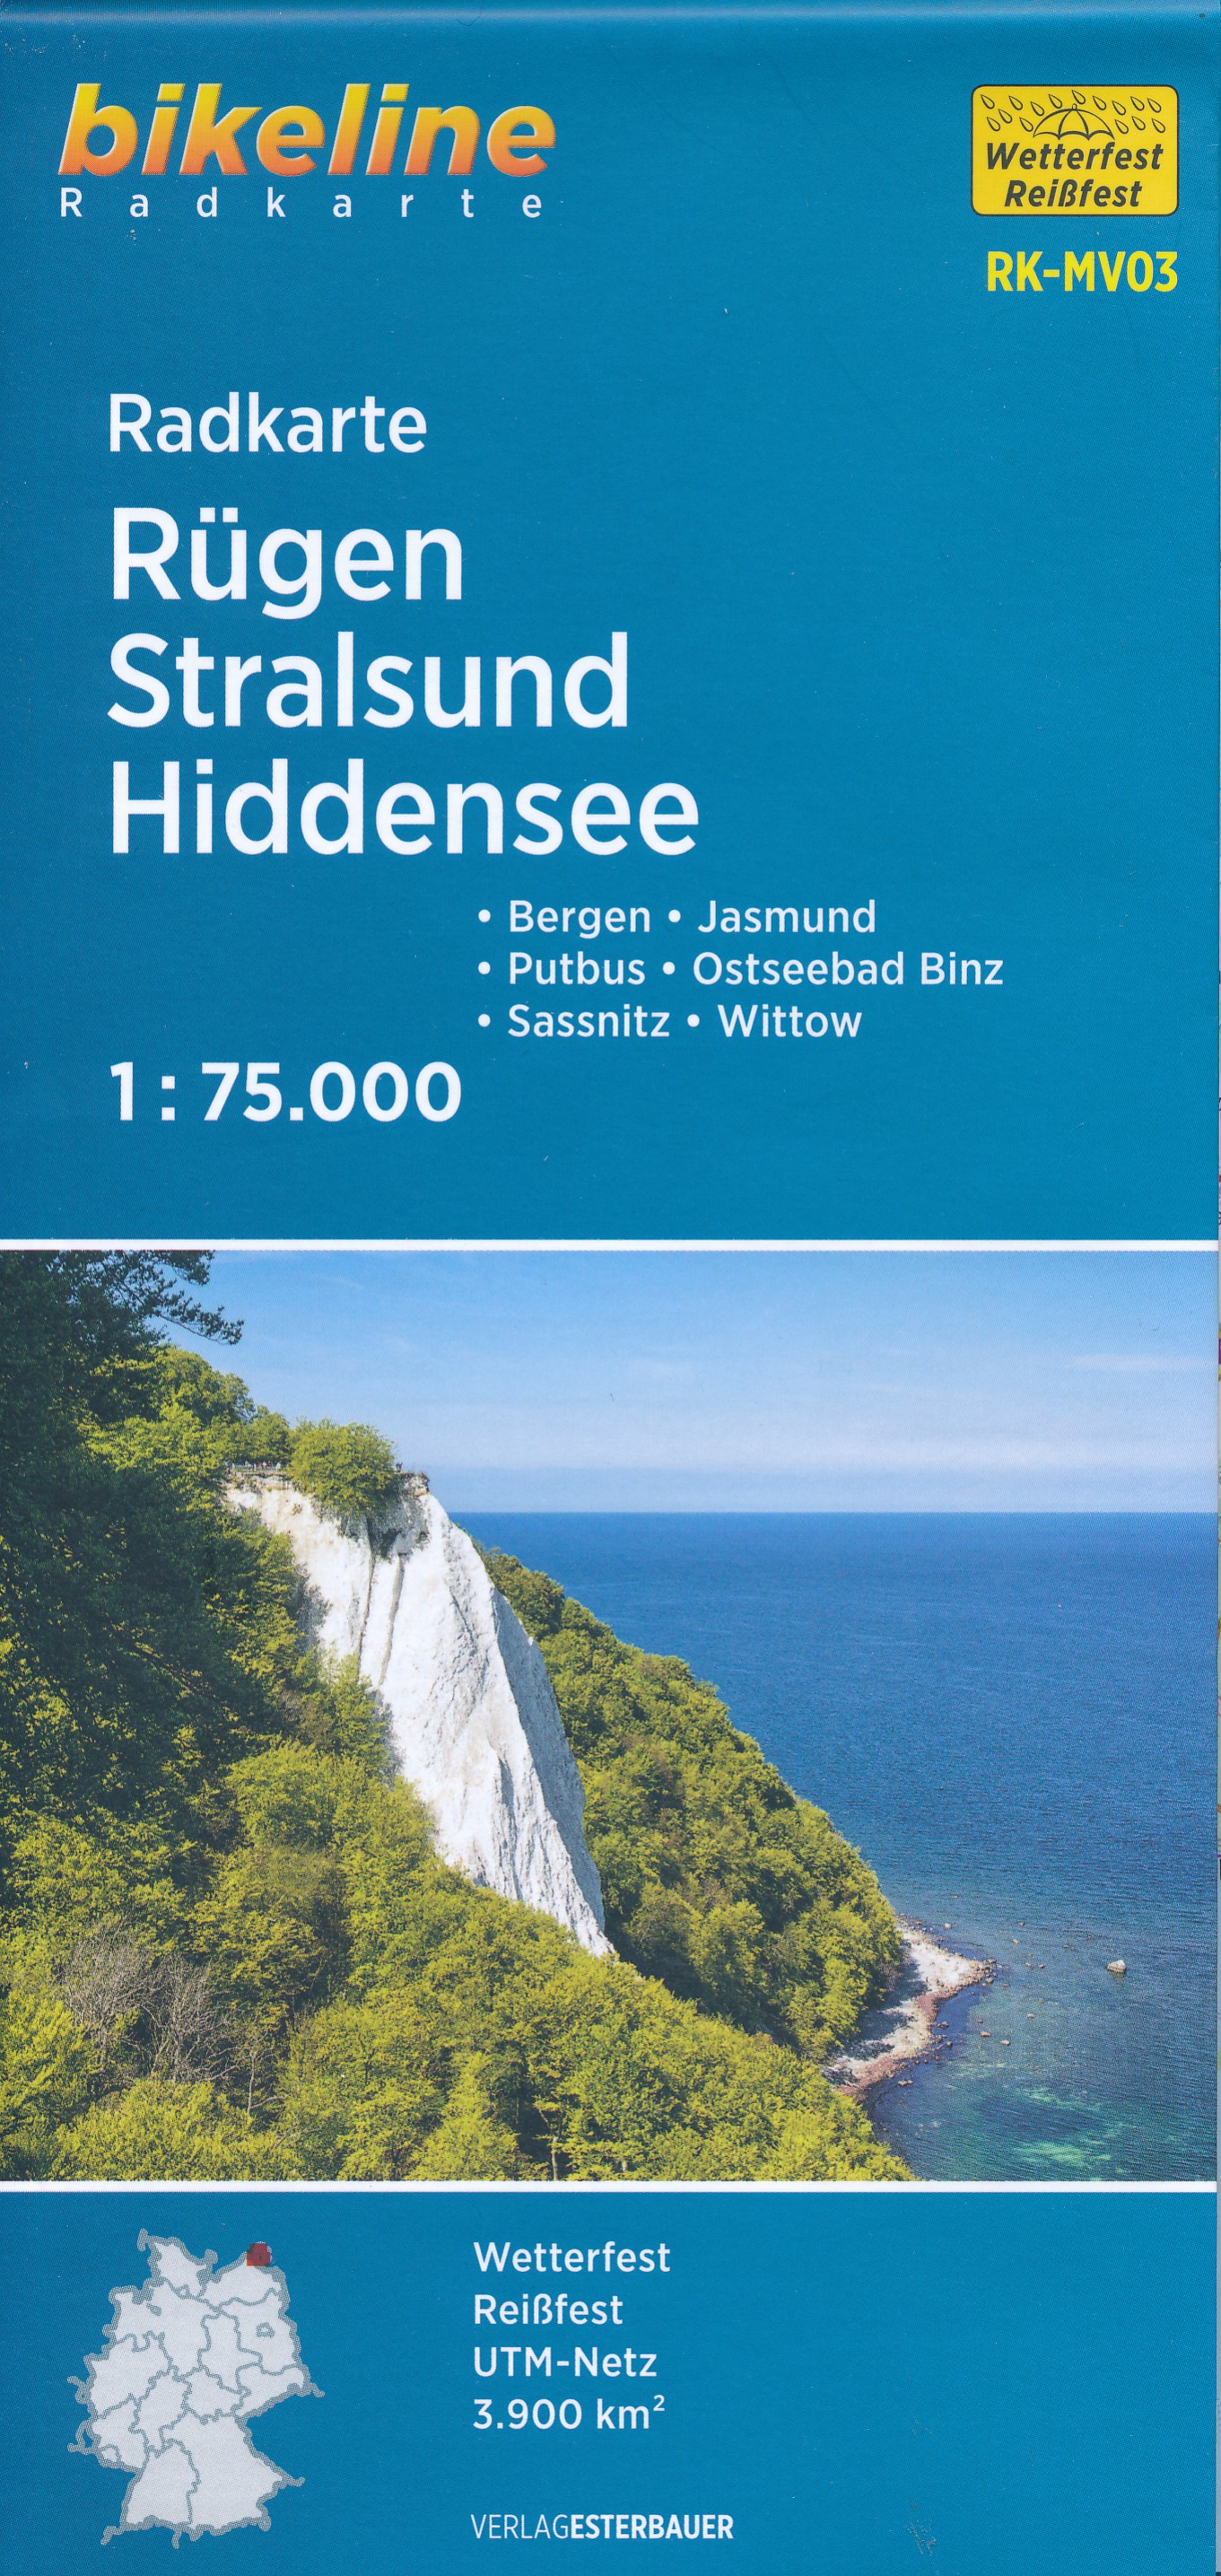 Online bestellen: Fietskaart MV03 Bikeline Radkarte Rügen - Stralsund - Hiddensee | Esterbauer